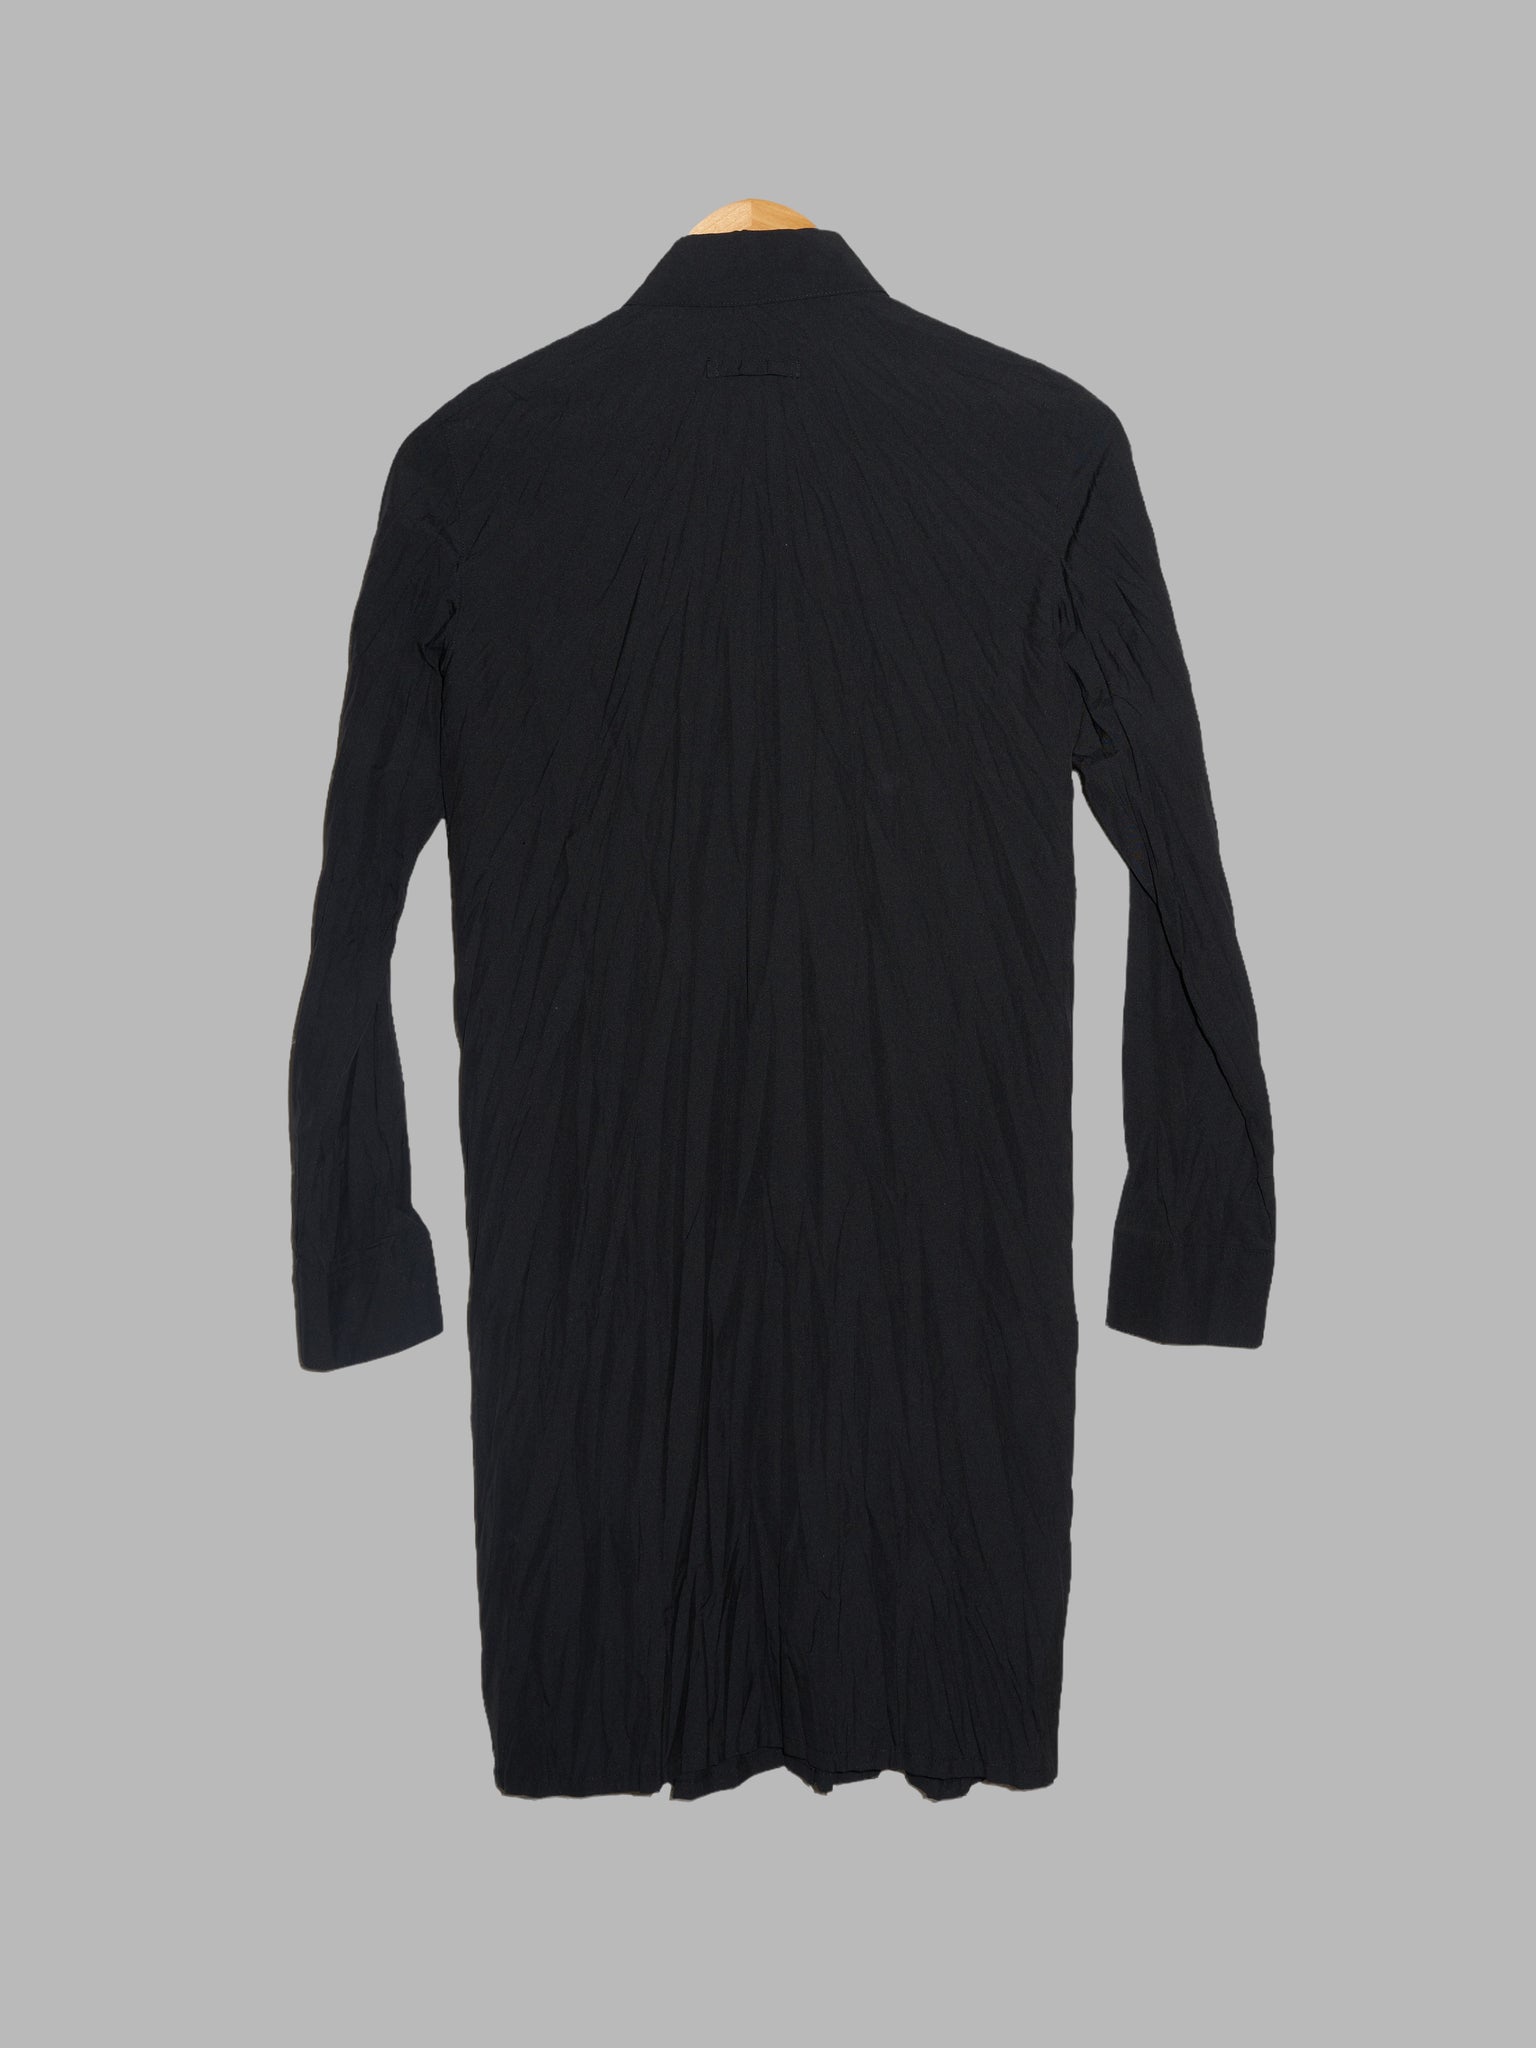 Jean Paul Gaultier Femme 1990s wrinkled black wool blend shirt dress - size 40